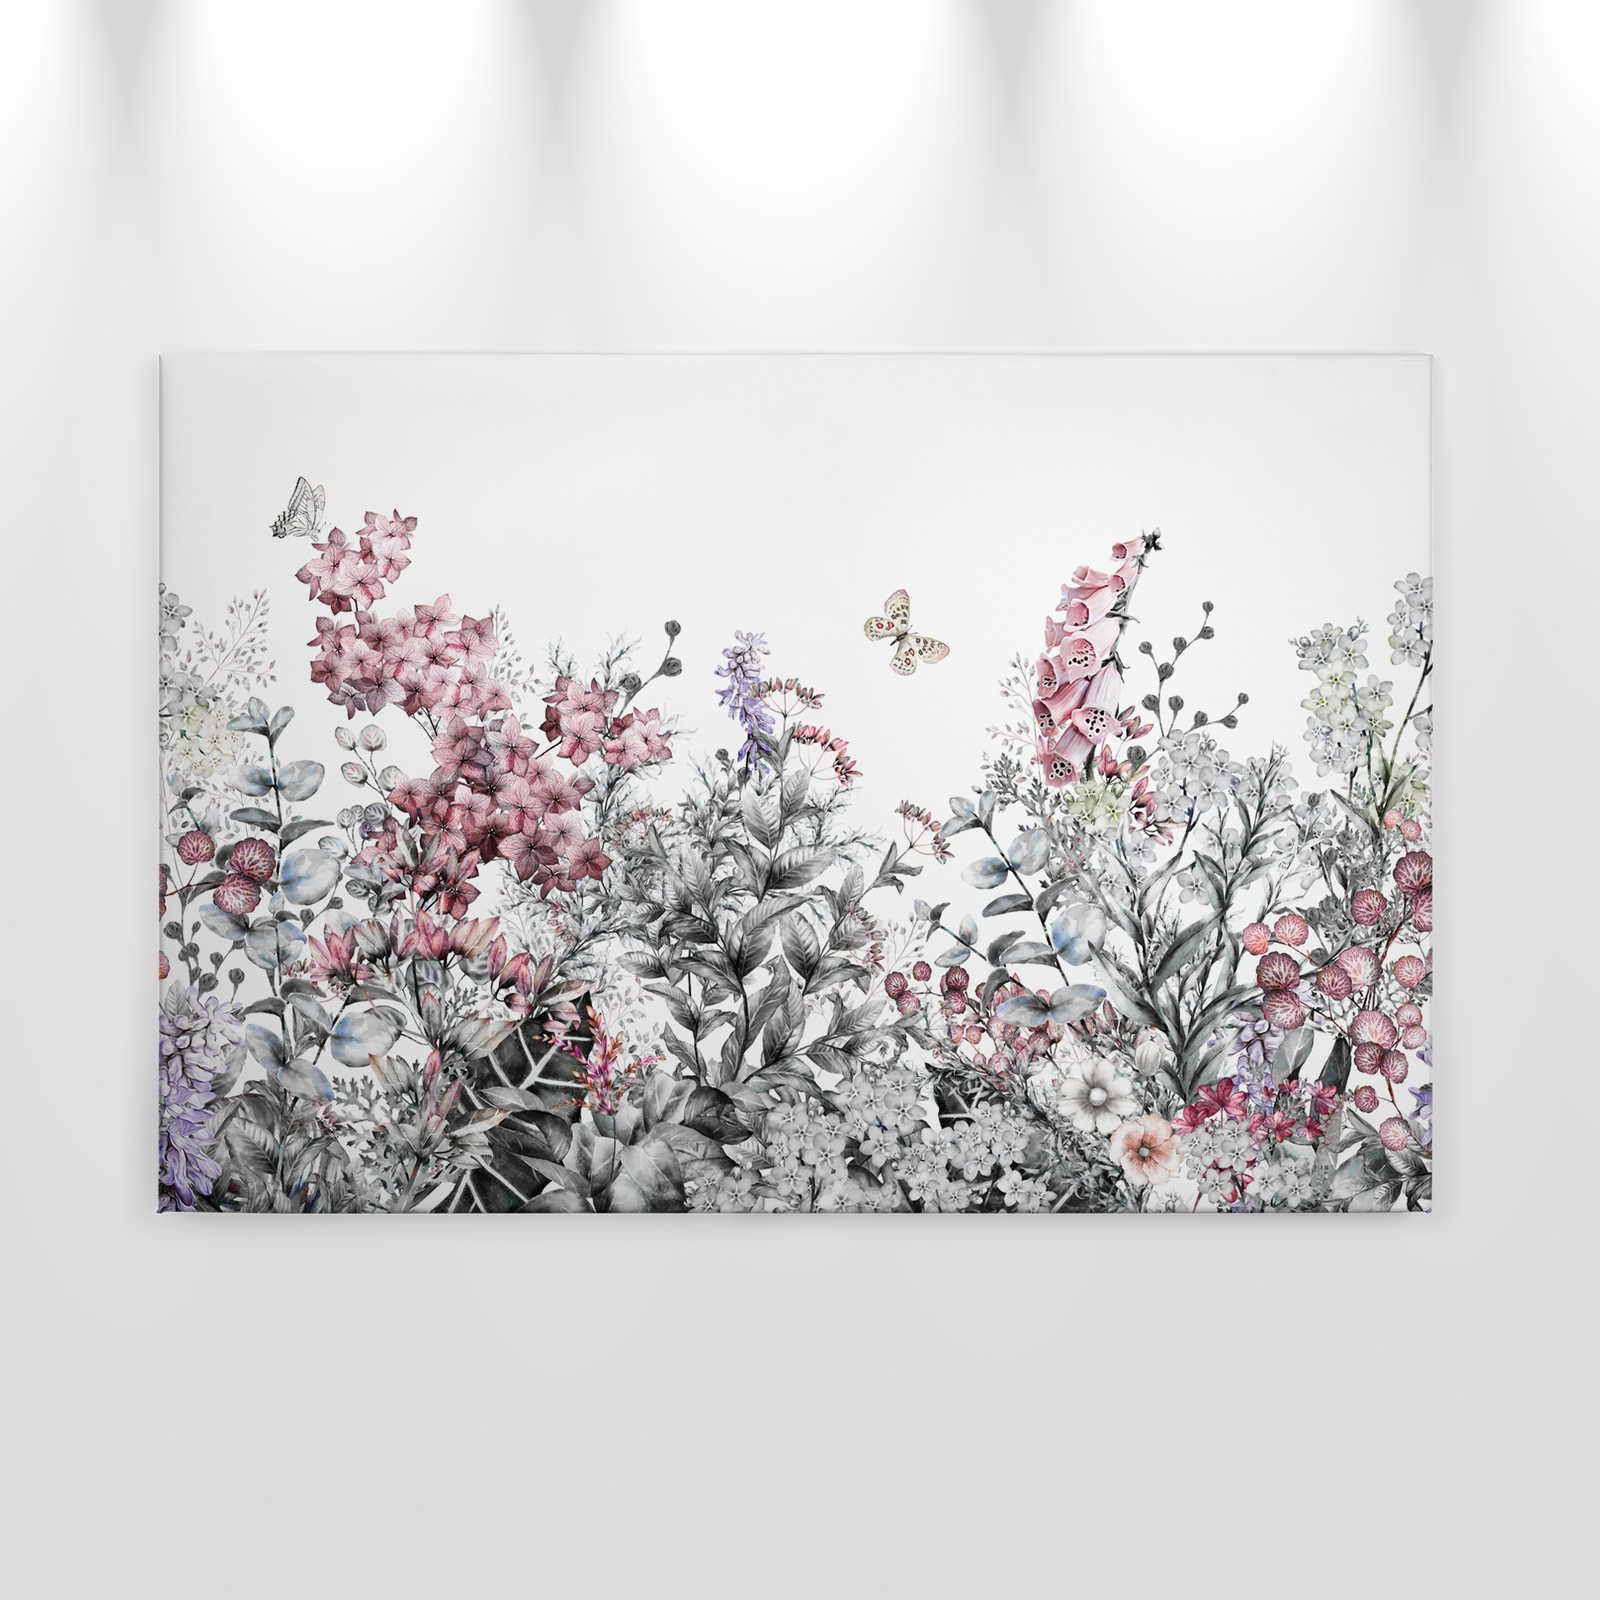             Leinwand mit Schlicht gemalten Blumen – 0,90 m x 0,60 m
        